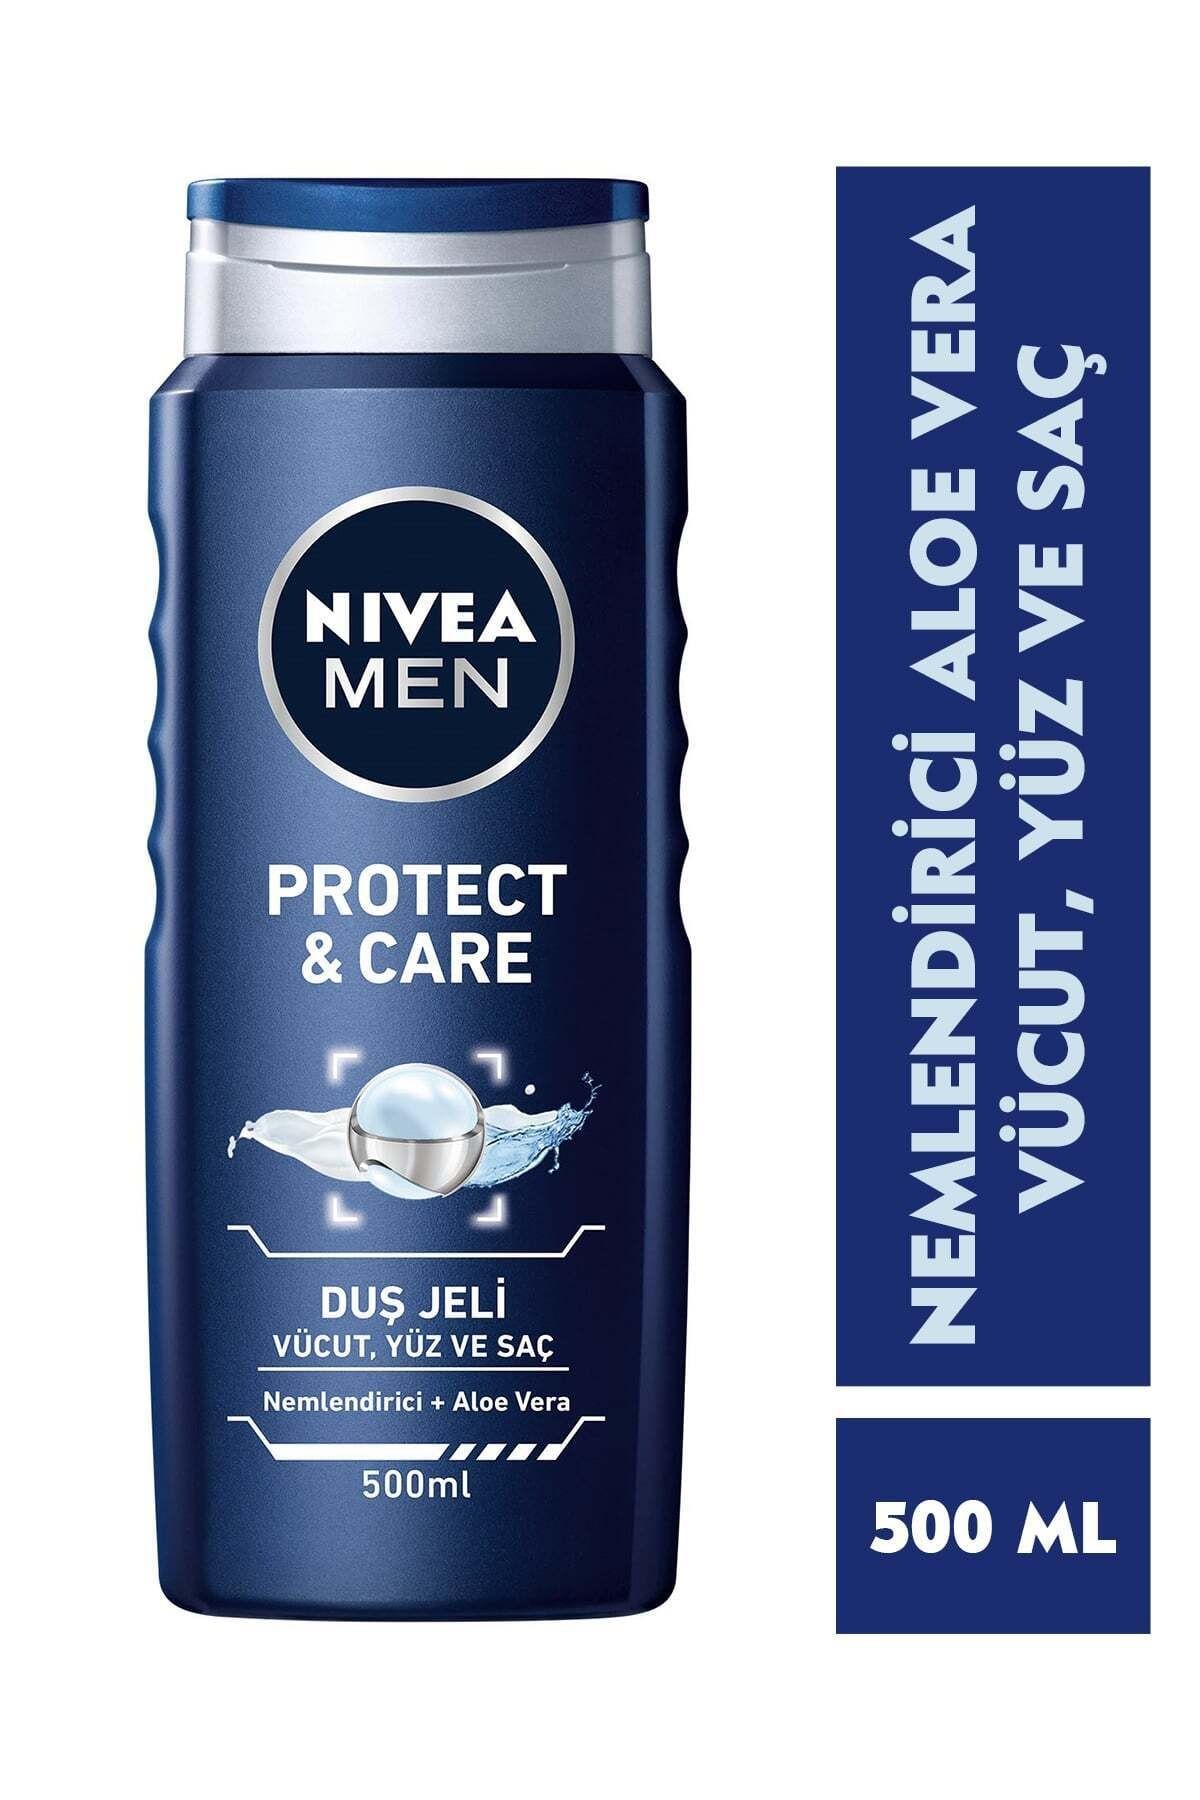 NIVEA Men Protect&Care Duş Jeli 500 ml, 3'ü 1 Arada Komple Bakım, Vücut, Saç ve Yüz için